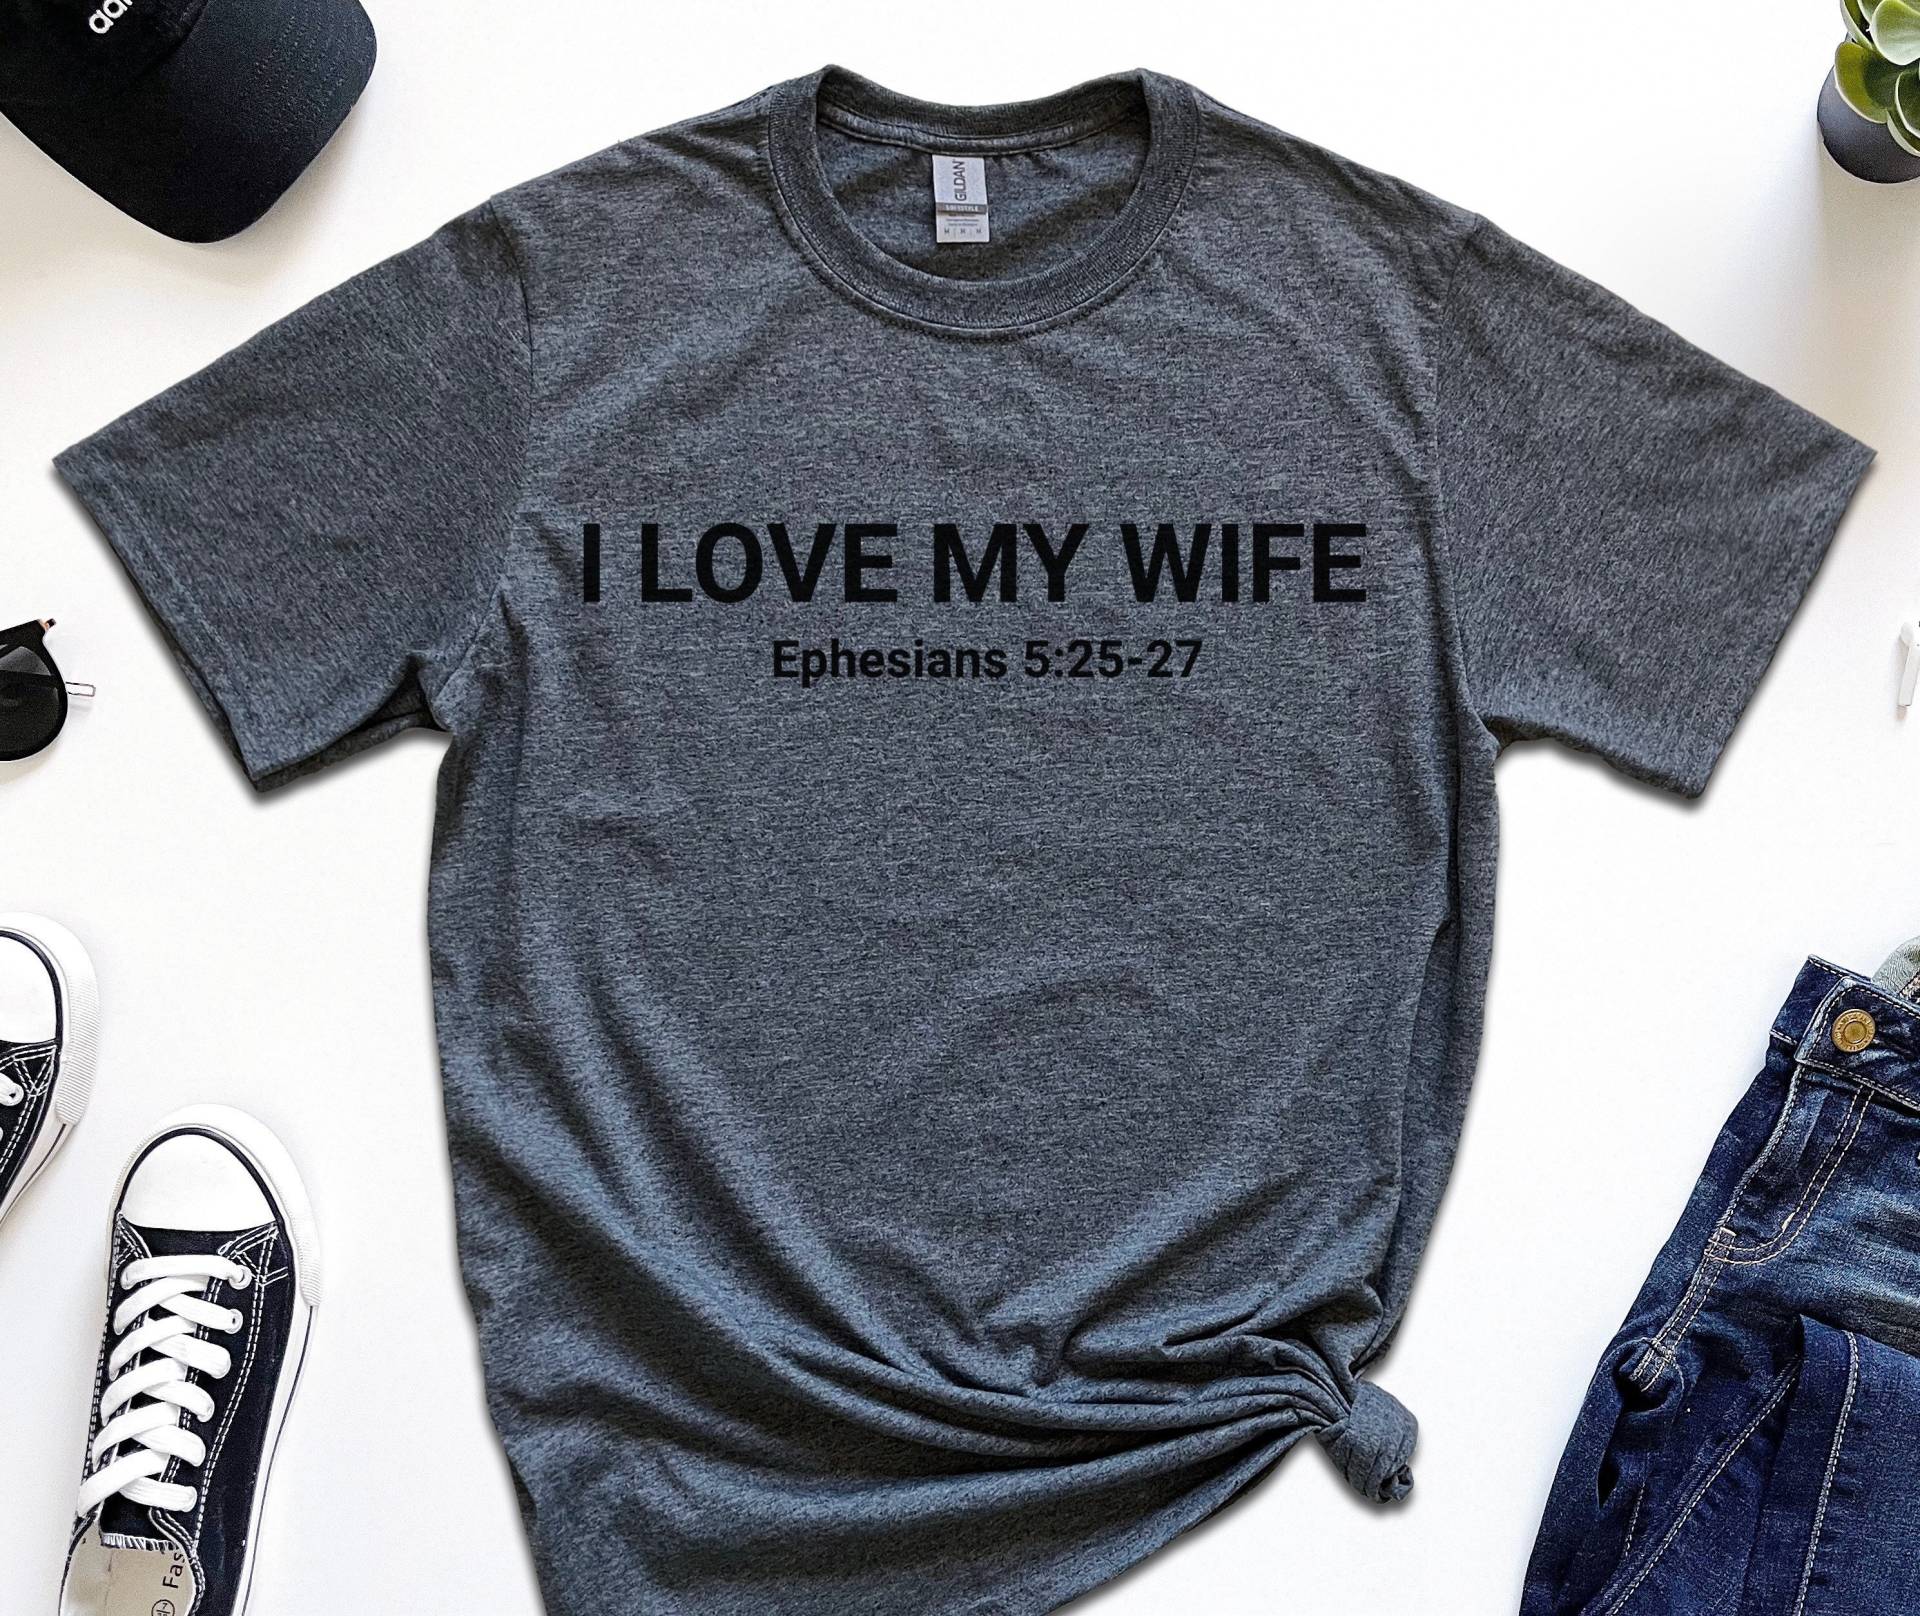 I Love My Wife Shirt, Ephemden 525-27, Verheiratete Shirts, Tolles Frauen Hochzeitshemden, Hochzeitshemden von RootedInChristStudio